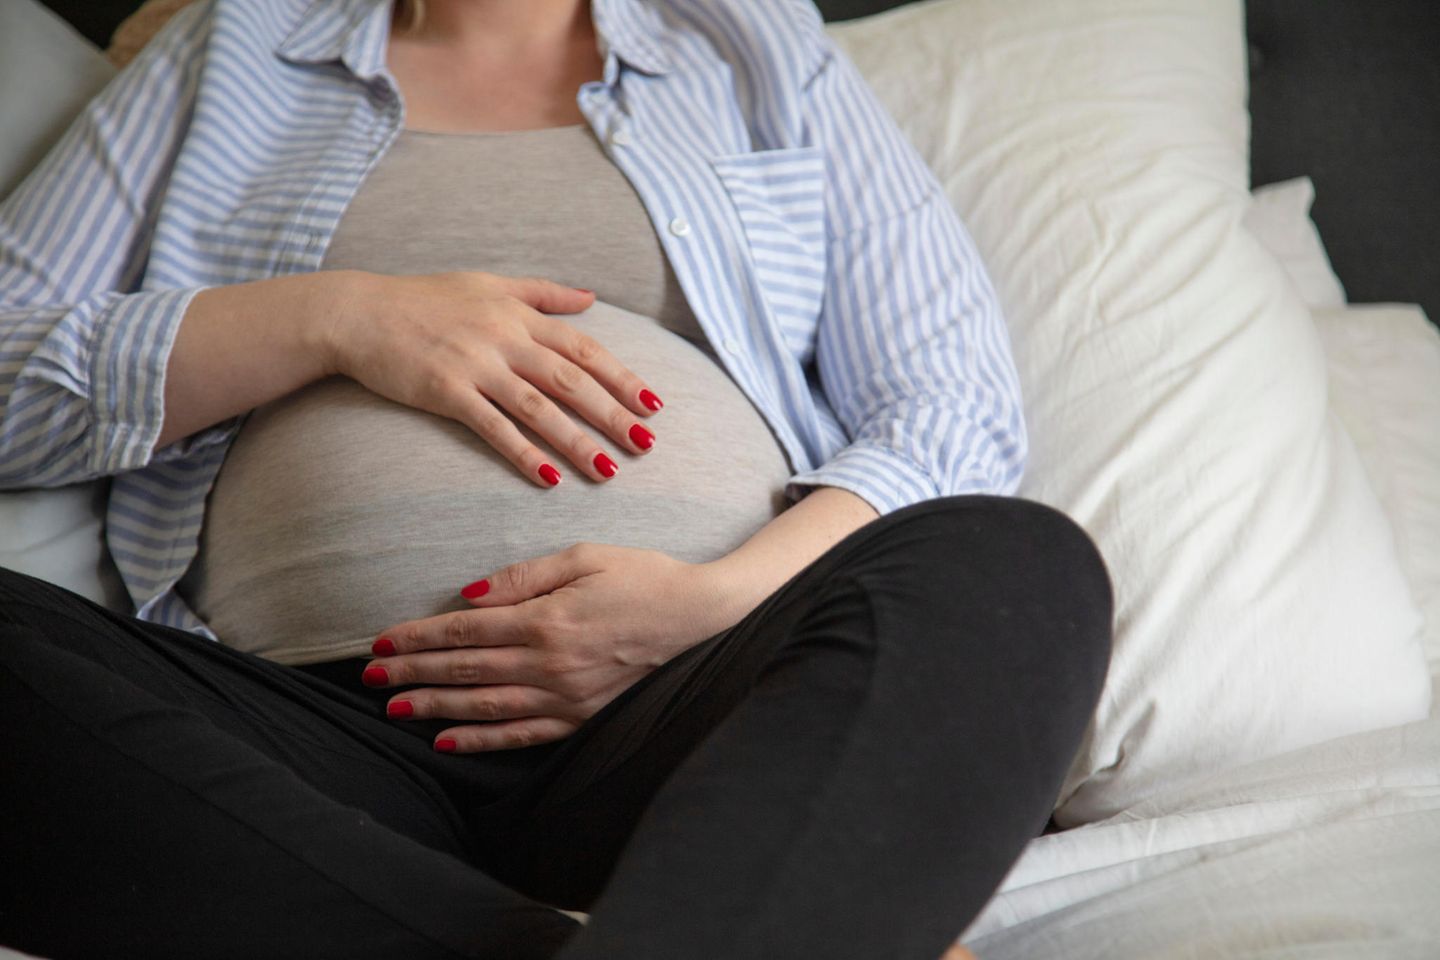 Plazenta praevia: Schwangere Person hält sich liegend mit beiden Händen den Bauch